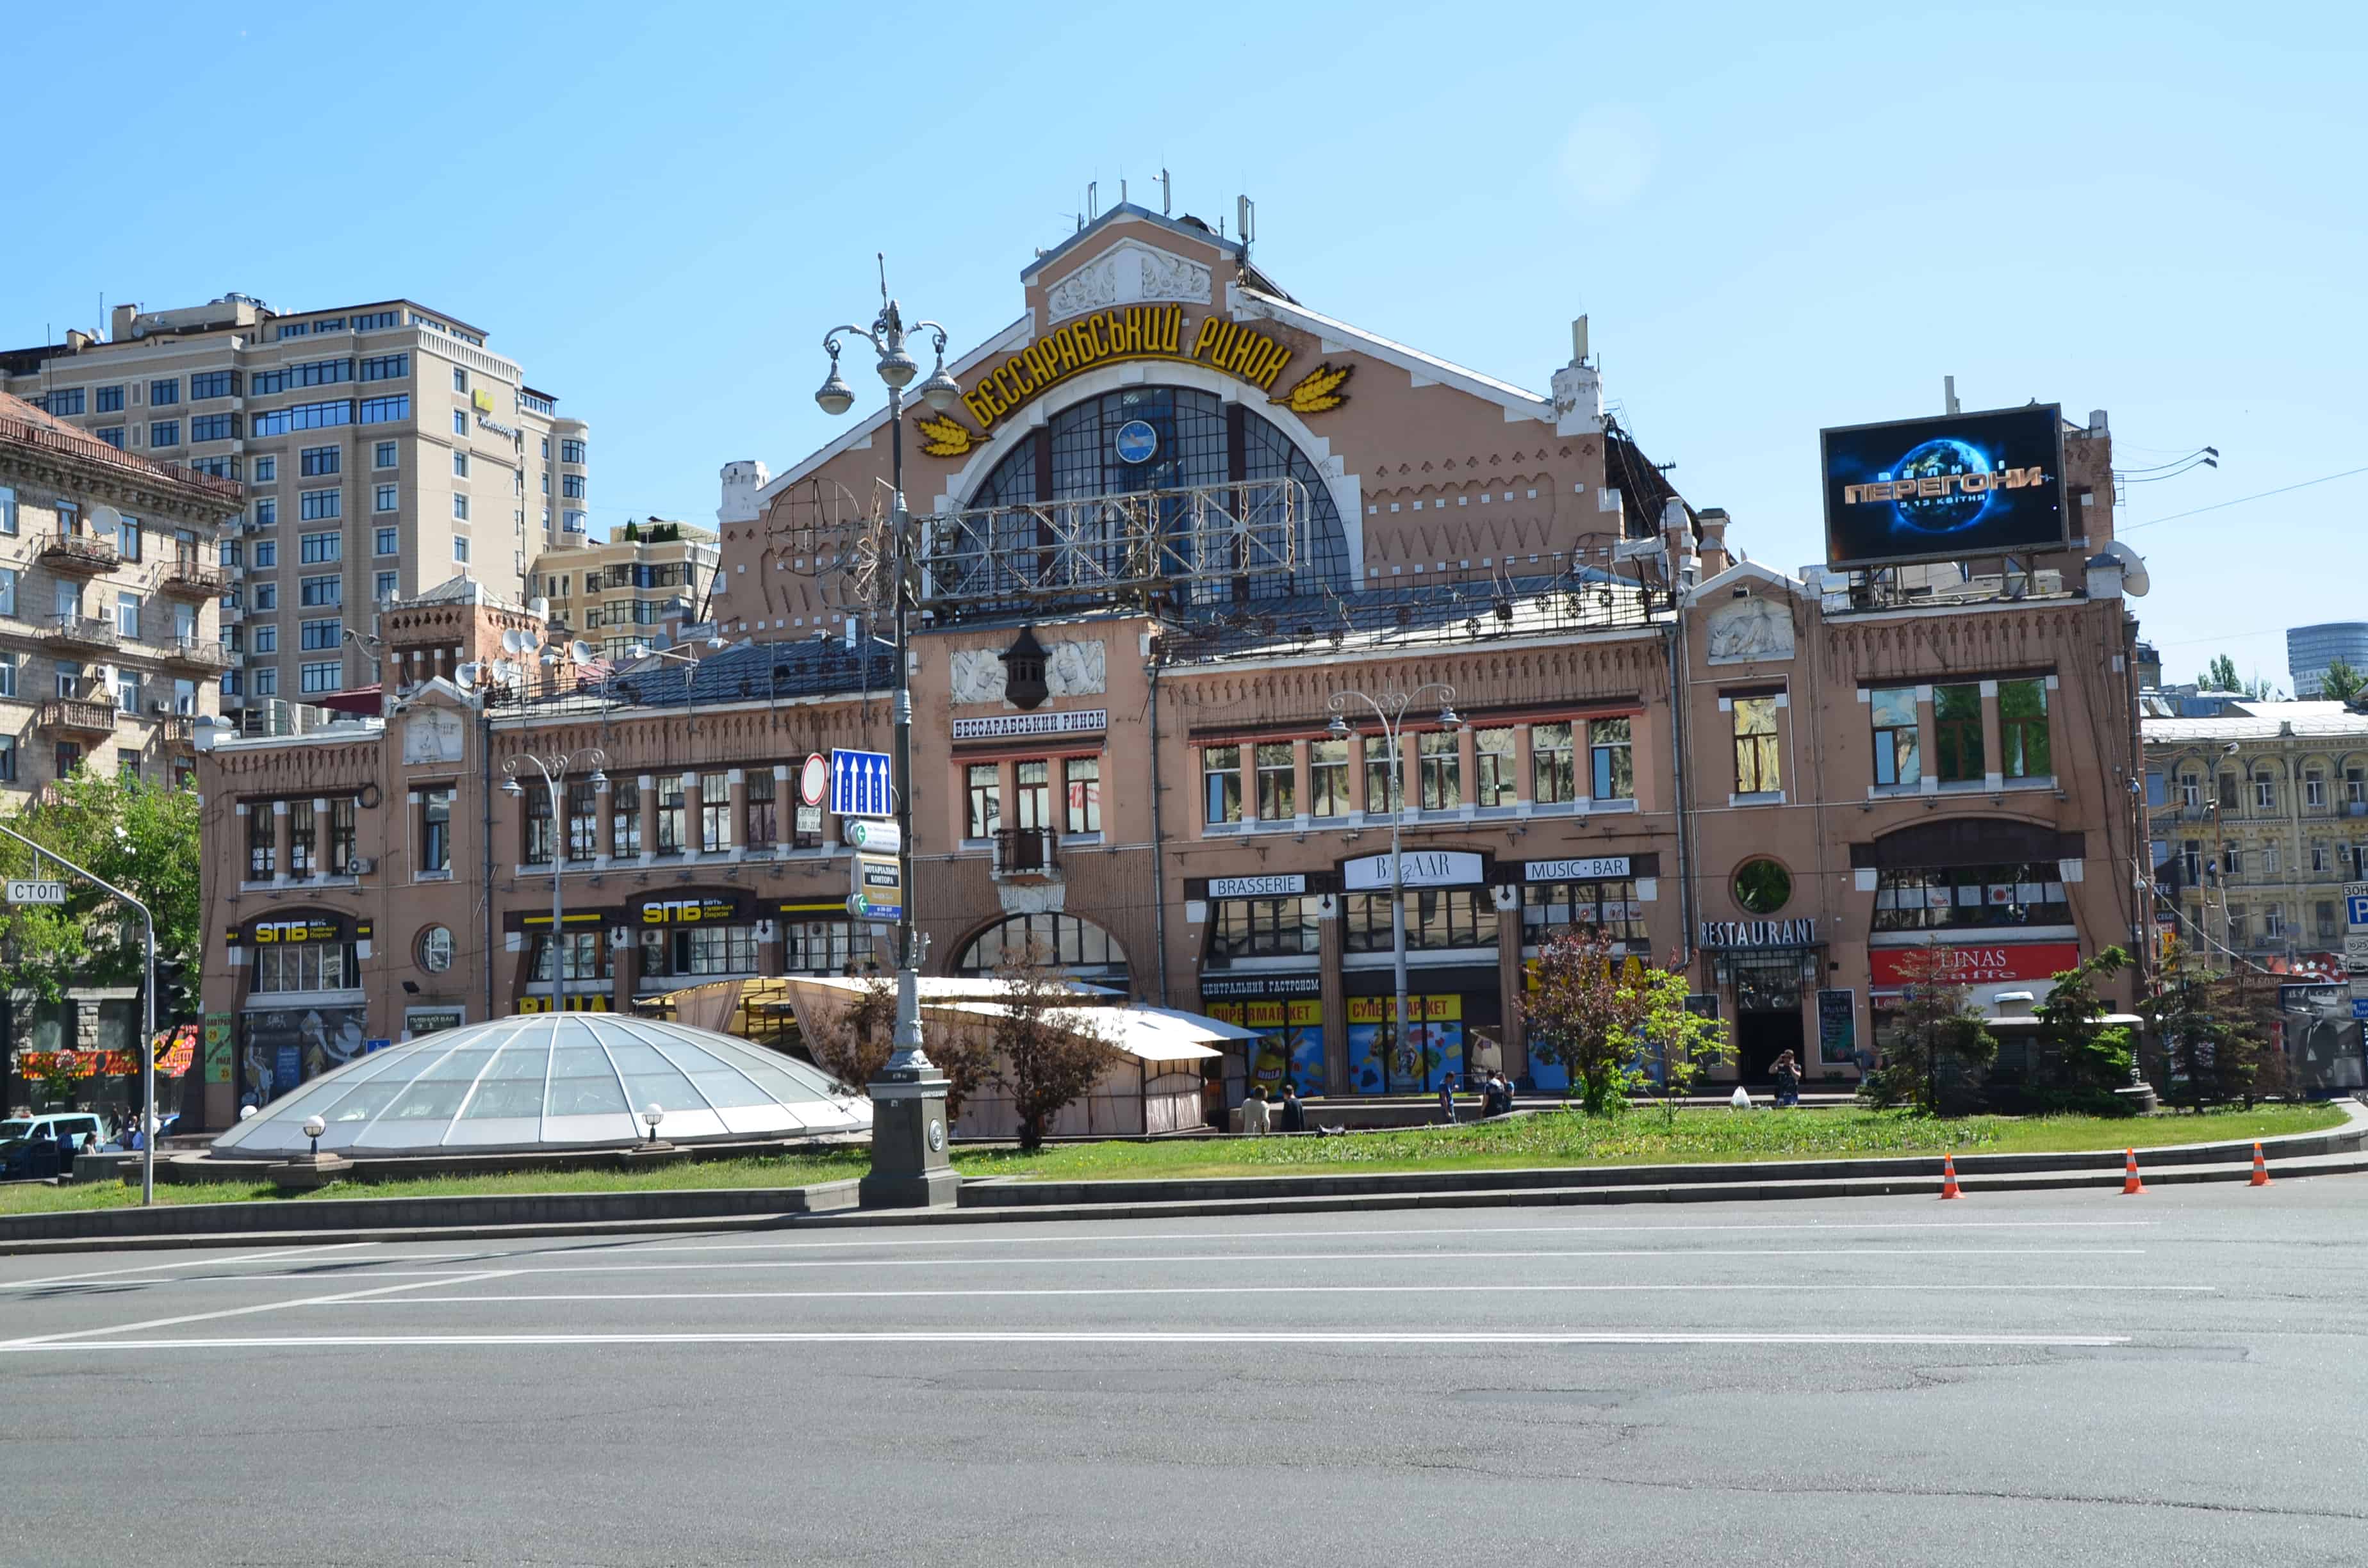 Besarabsky Market in Kyiv, Ukraine